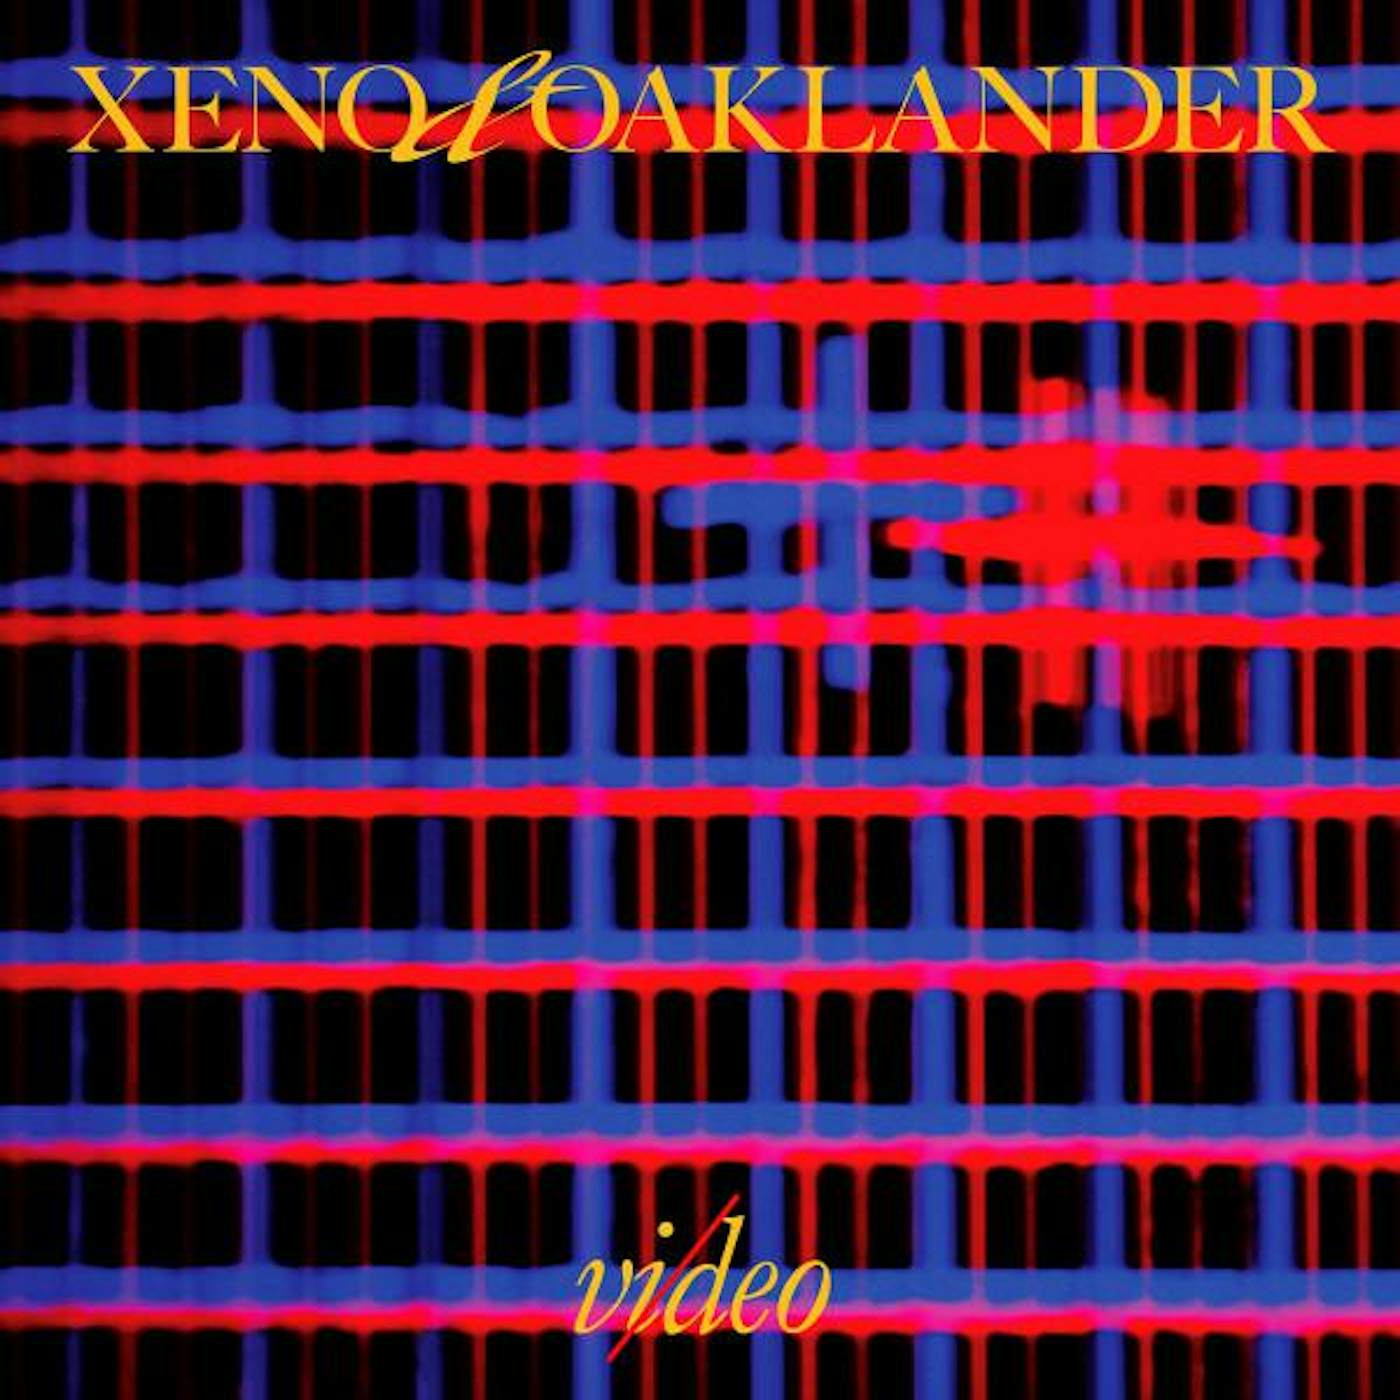 Xeno & Oaklander Vi/deo Vinyl Record